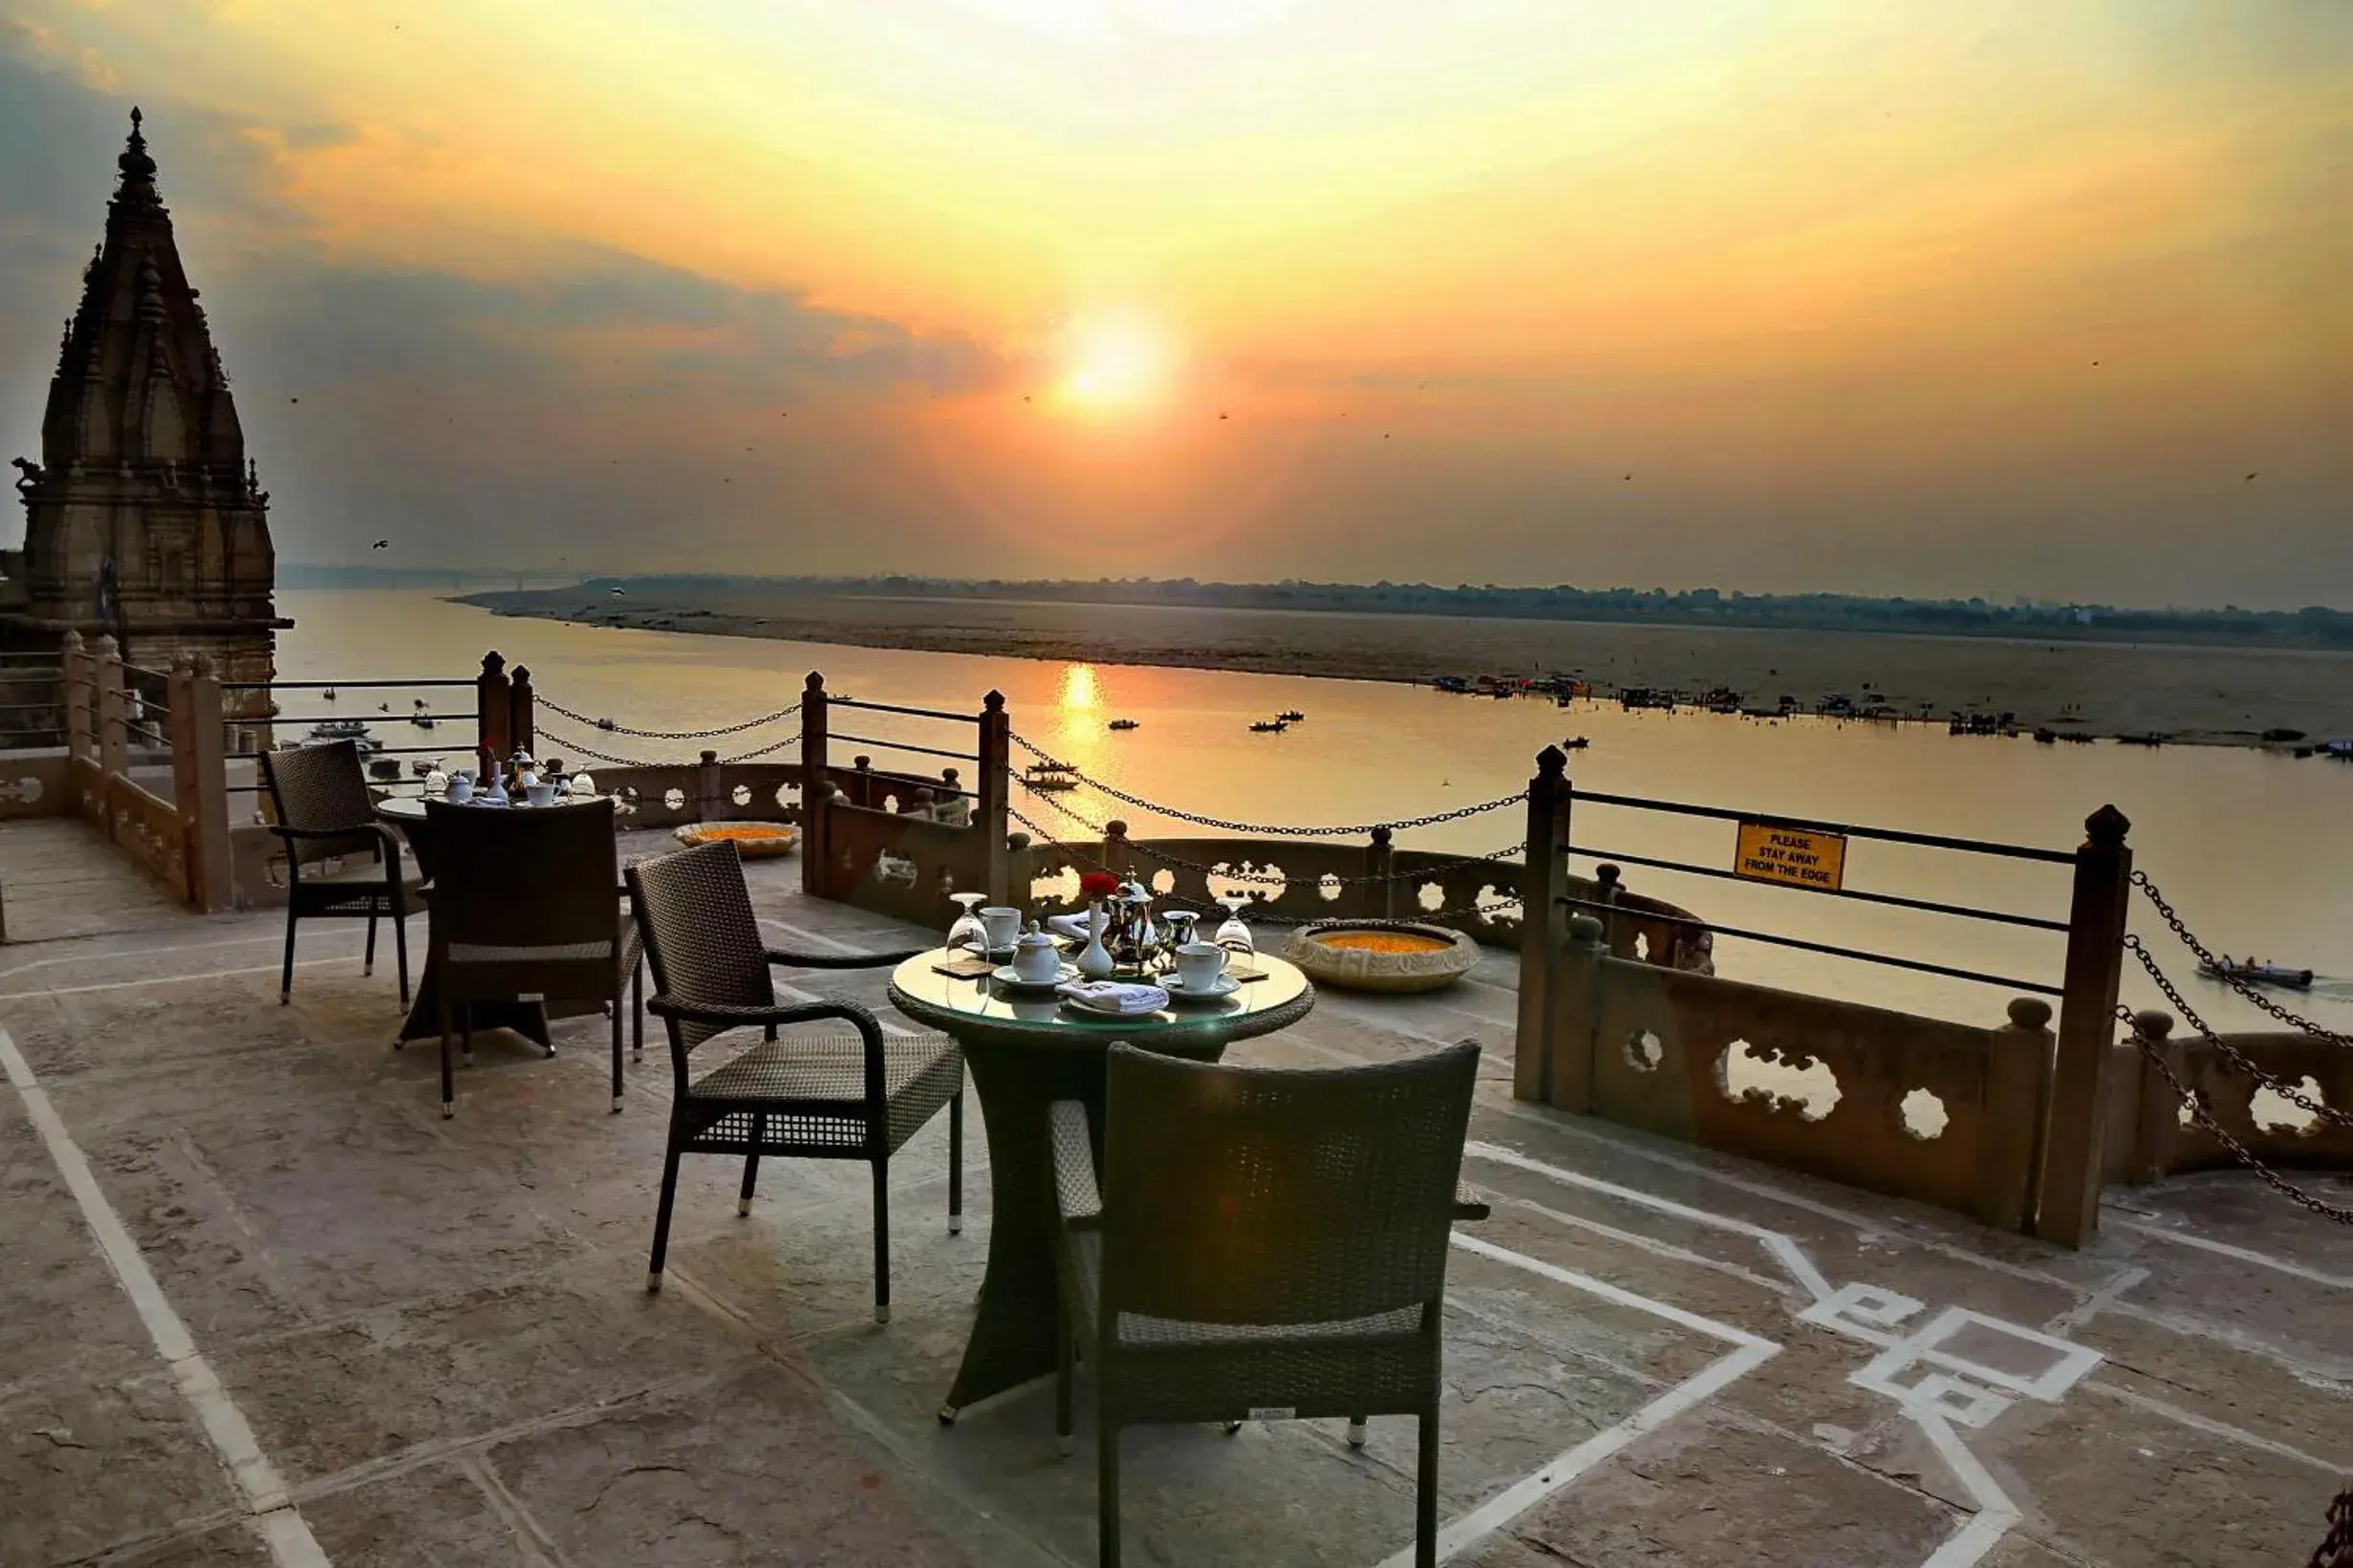 Balcony/Terrace in BrijRama Palace, Varanasi by the Ganges